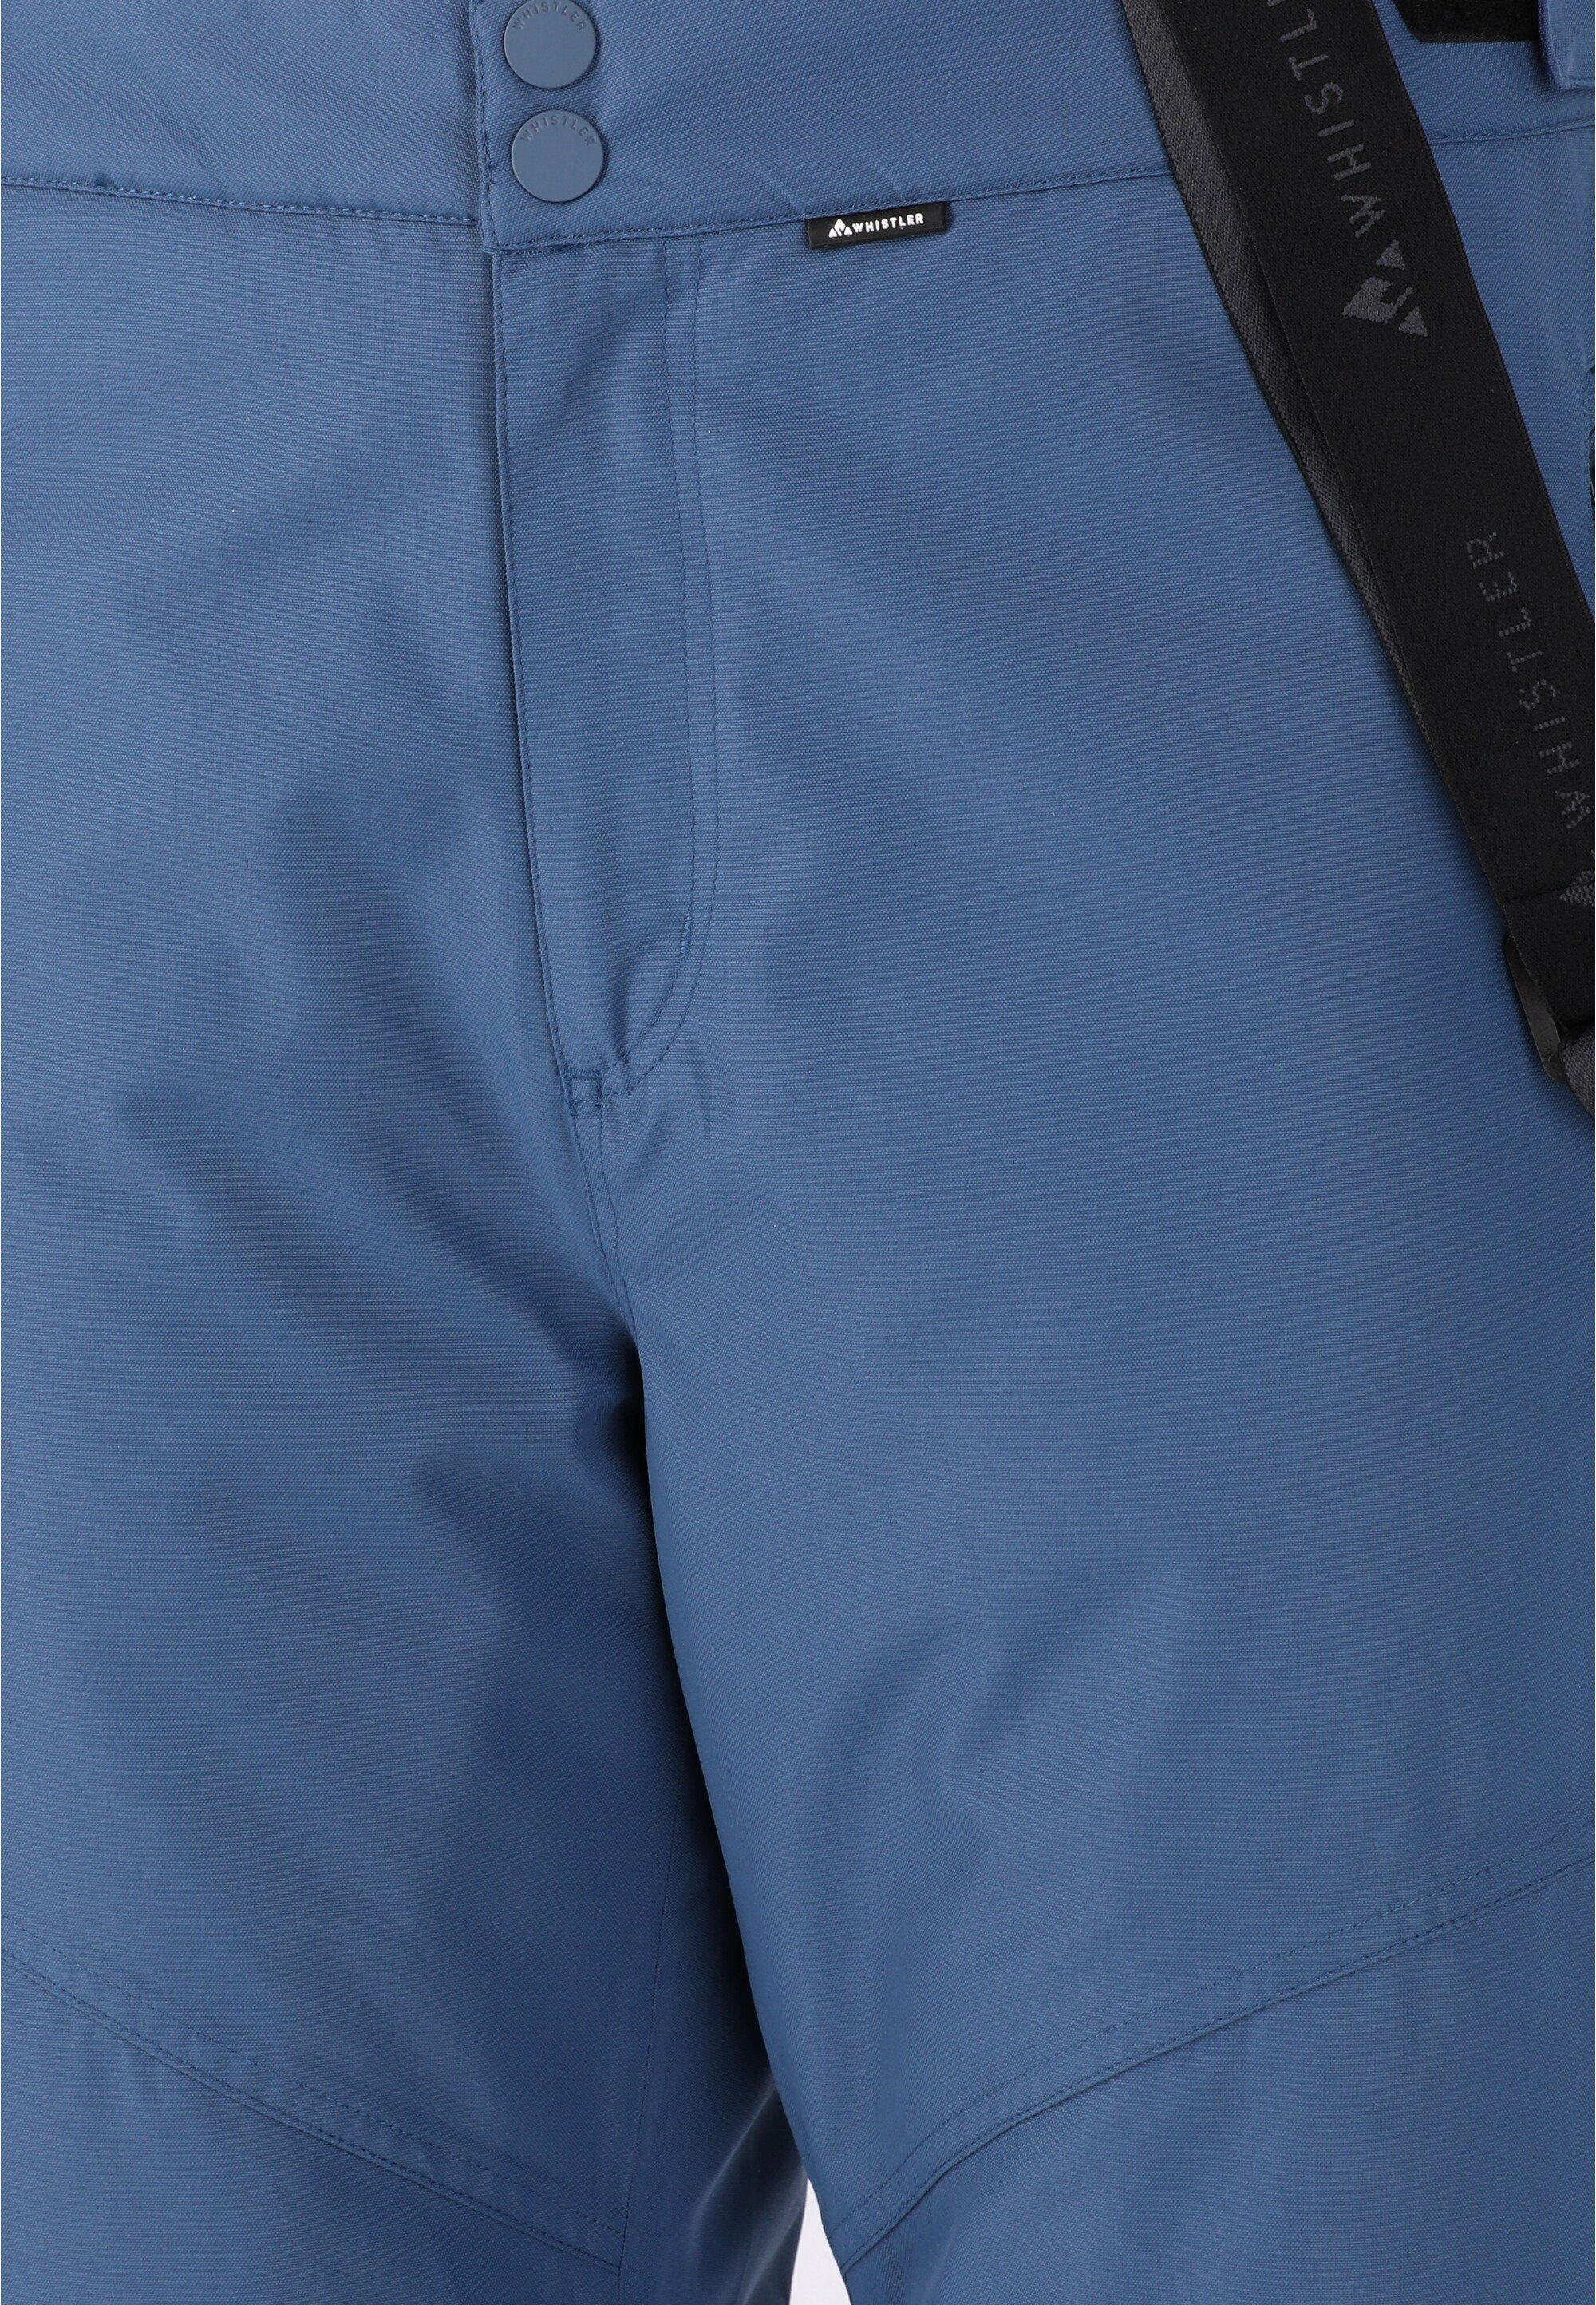 WHISTLER Skihose Drizzle mit Hosenträgern und Eigenschaft wasserfester blau